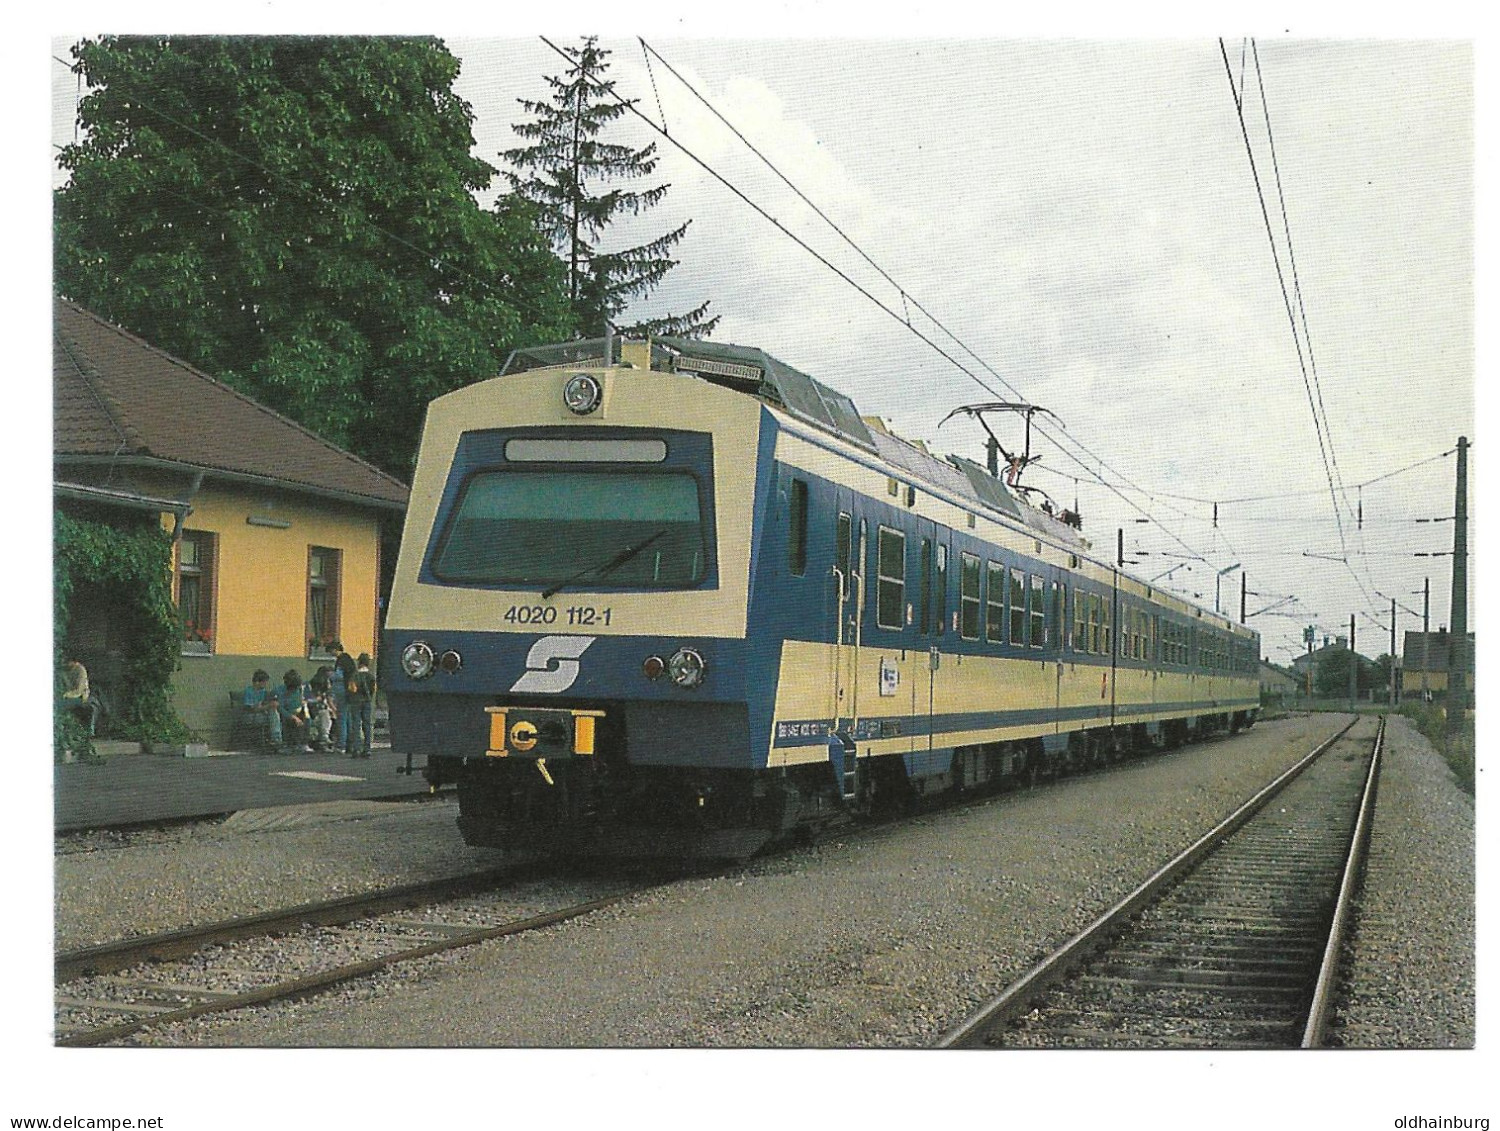 2327p: Eisenbahn AK, ÖBB- Triebwagen Reihe 4020.1, VOR, Bahnhof Wolfsthal (S7 Wien- Hainburg- Wolfsthal) - Bad Deutsch-Altenburg